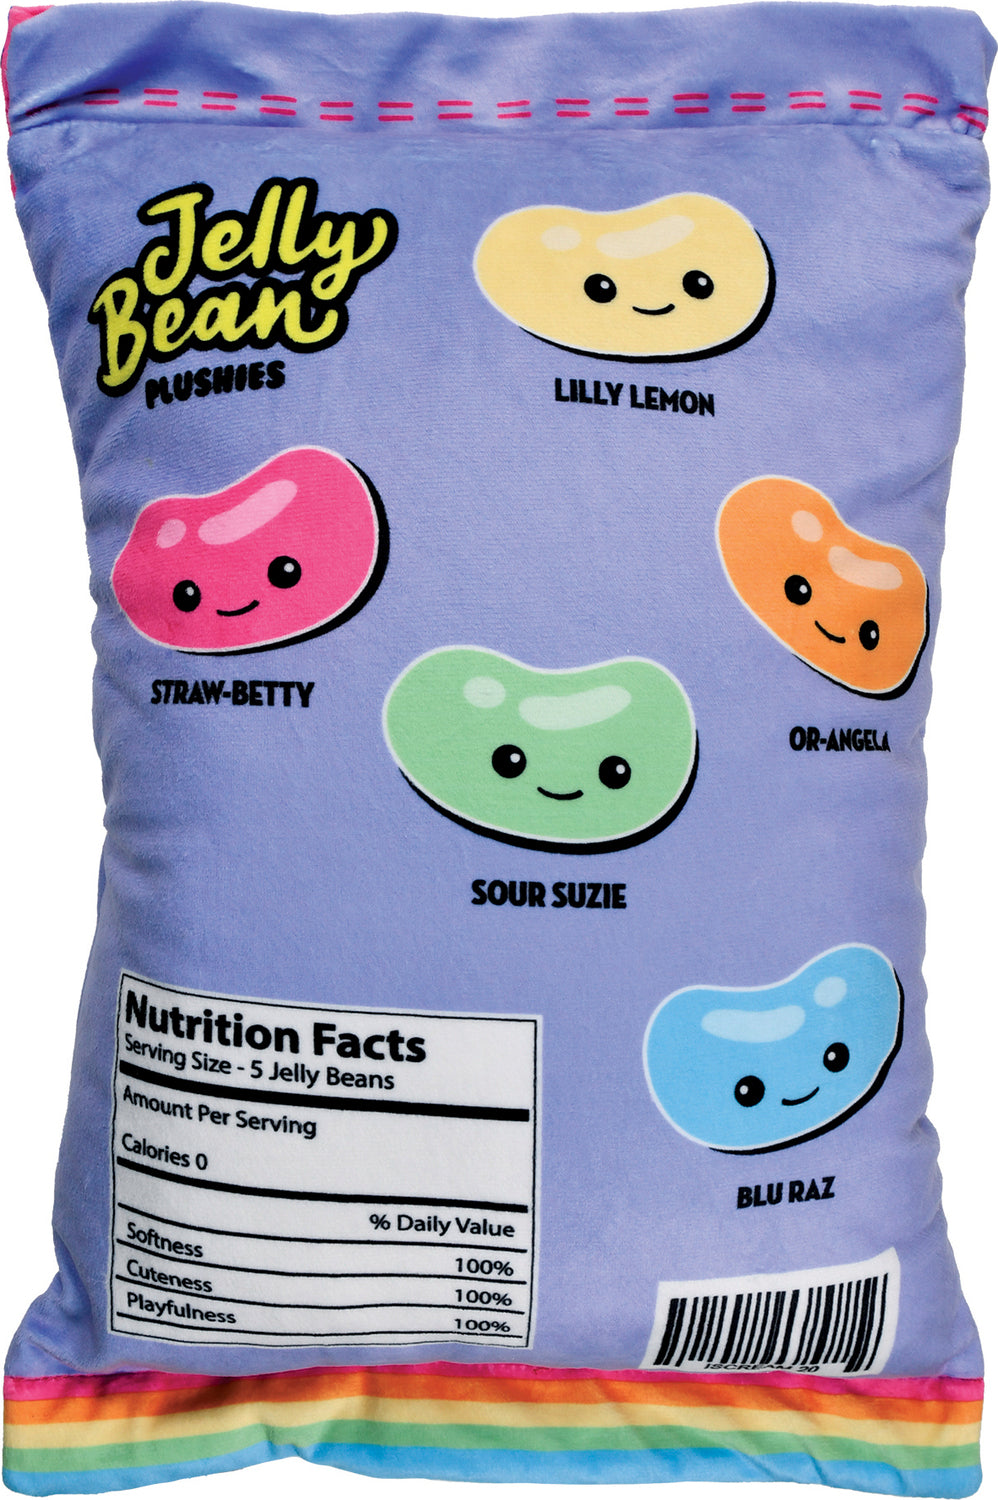 Jelly Beans 3D Pillow